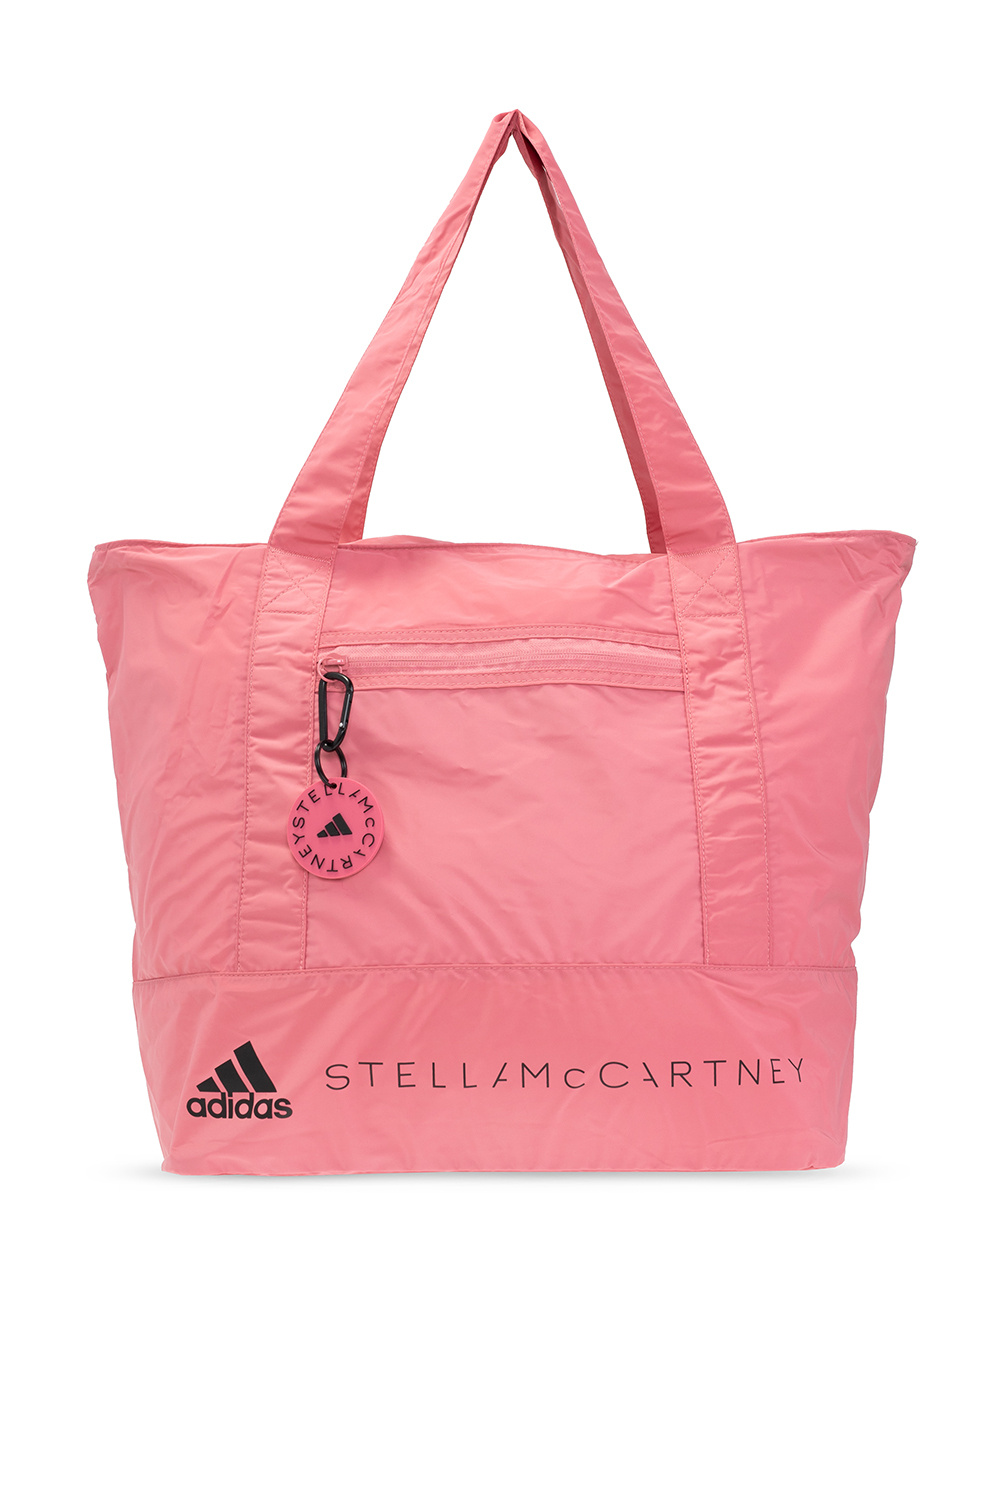 Adidas by Stella McCartney, Bags